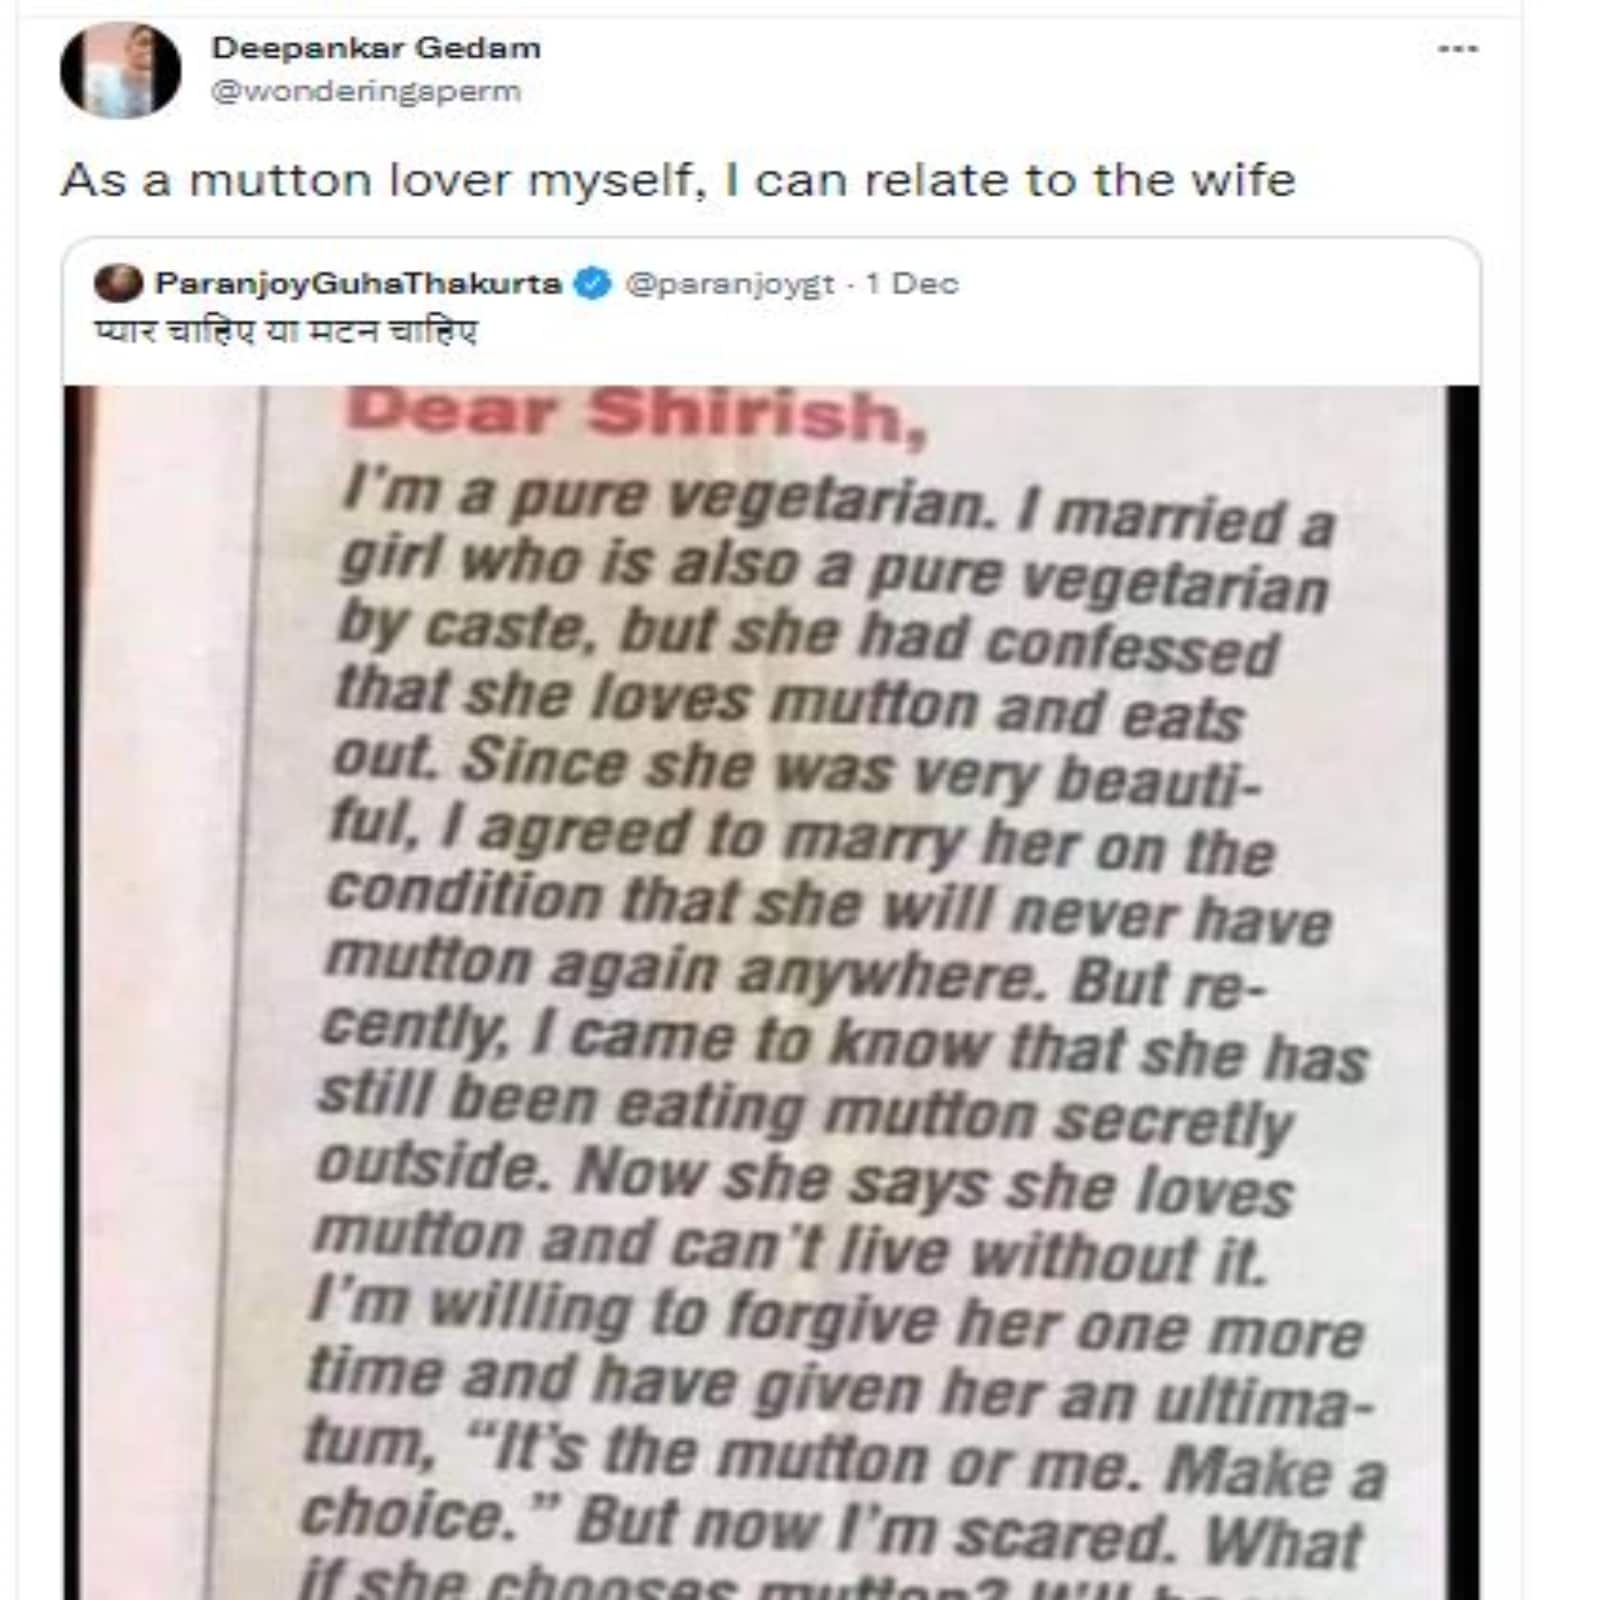 wife eats mutton secretly 